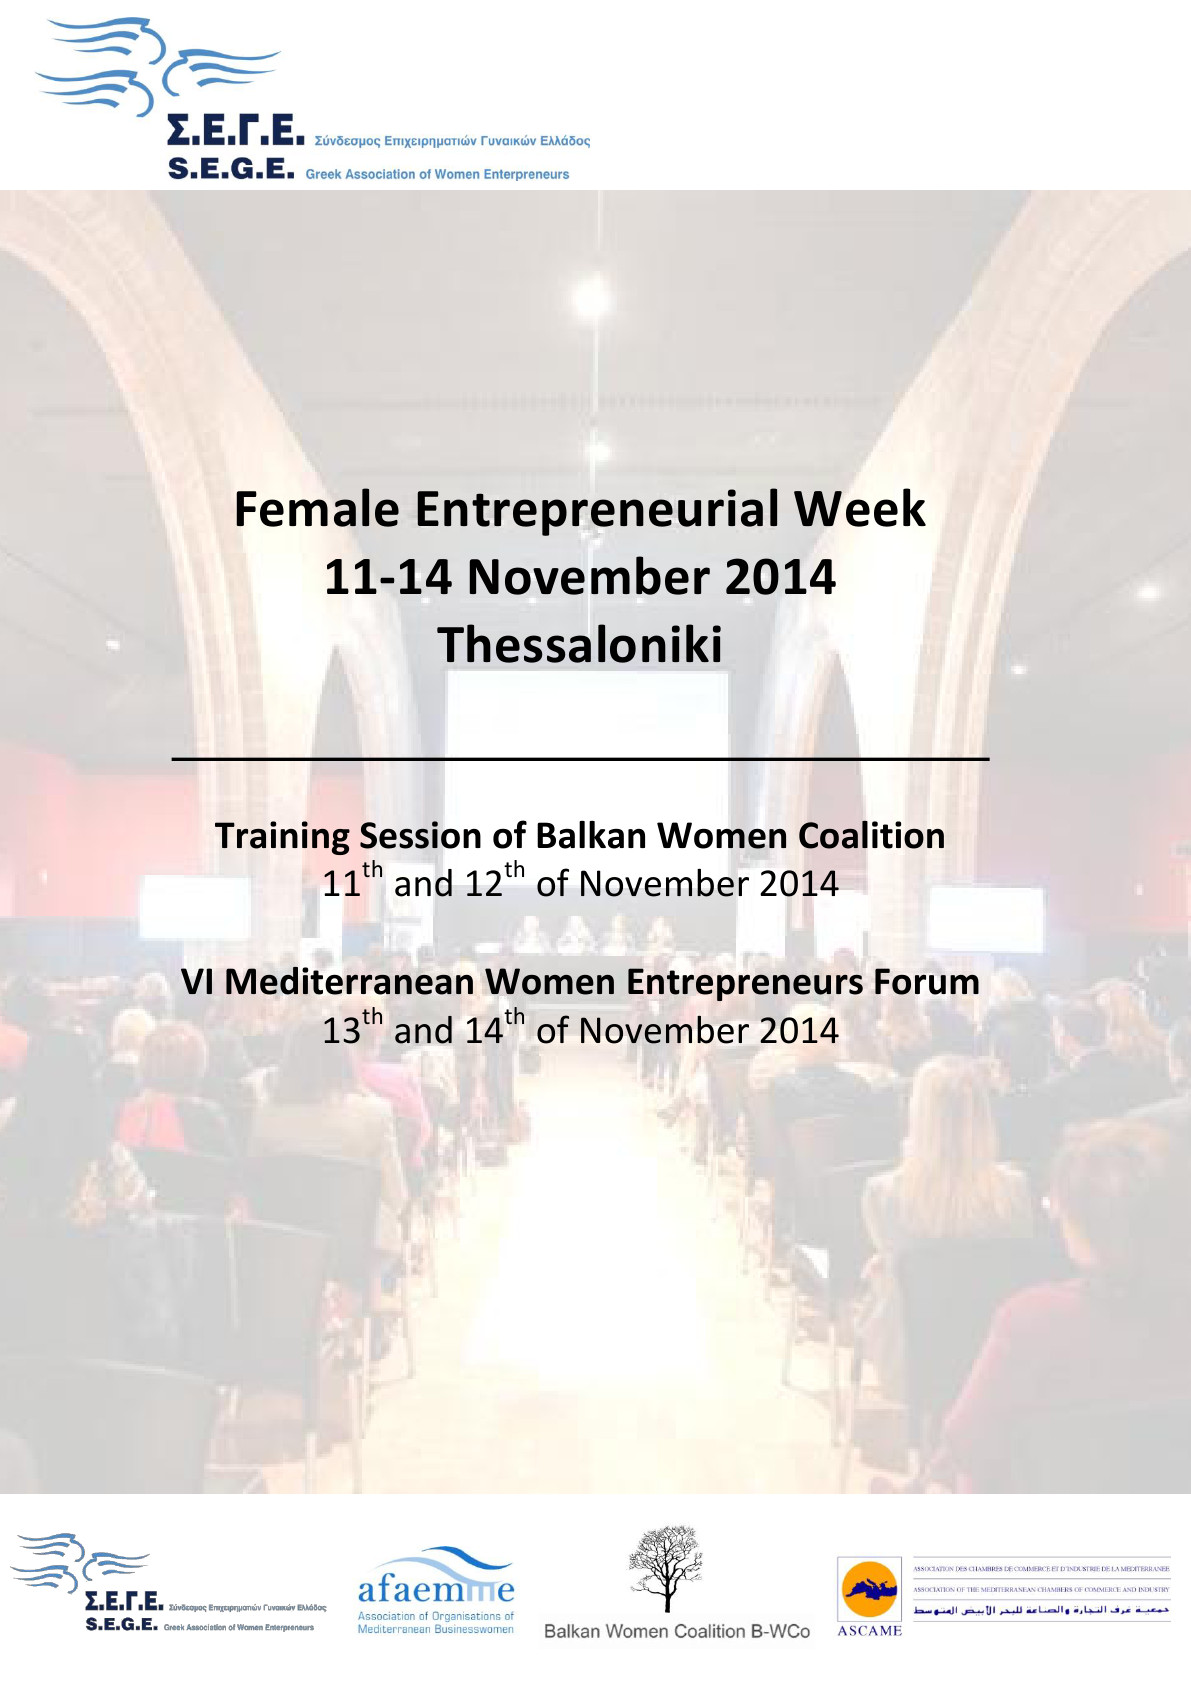 sege-female-entrepreneurial-week-01